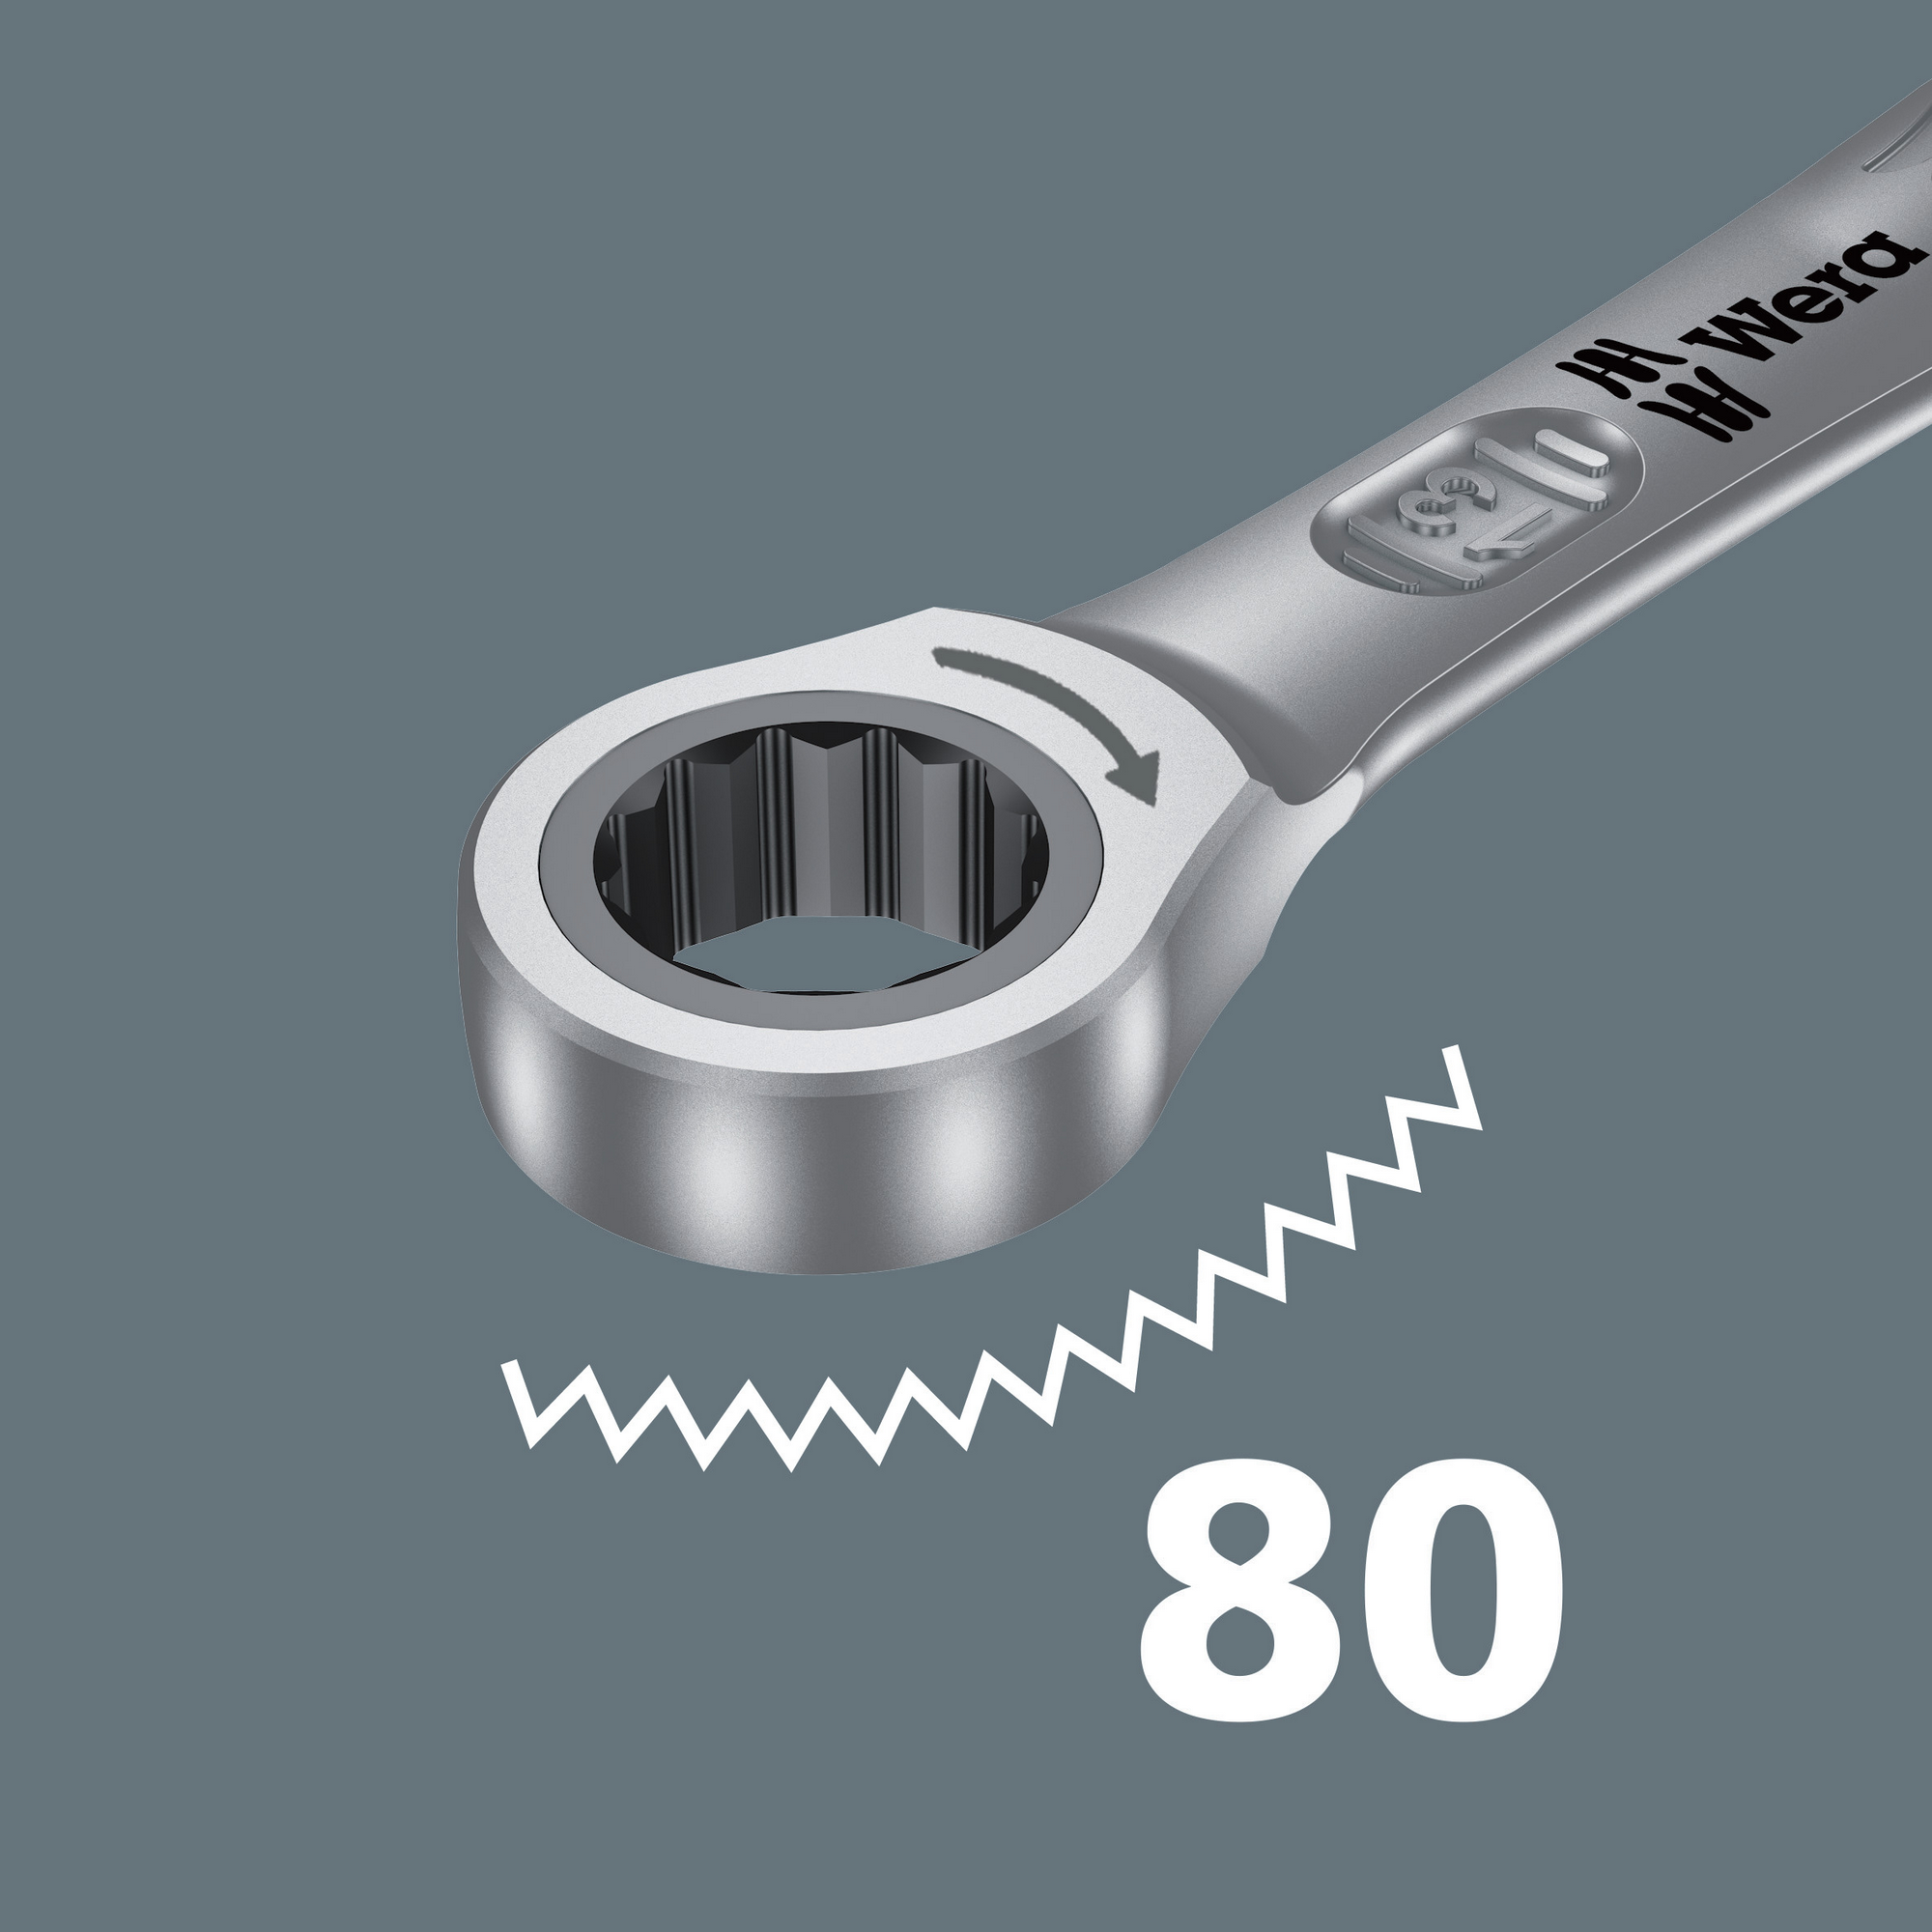 Maul-Ringratschen-Schlüssel 'Joker' 13 mm + product picture